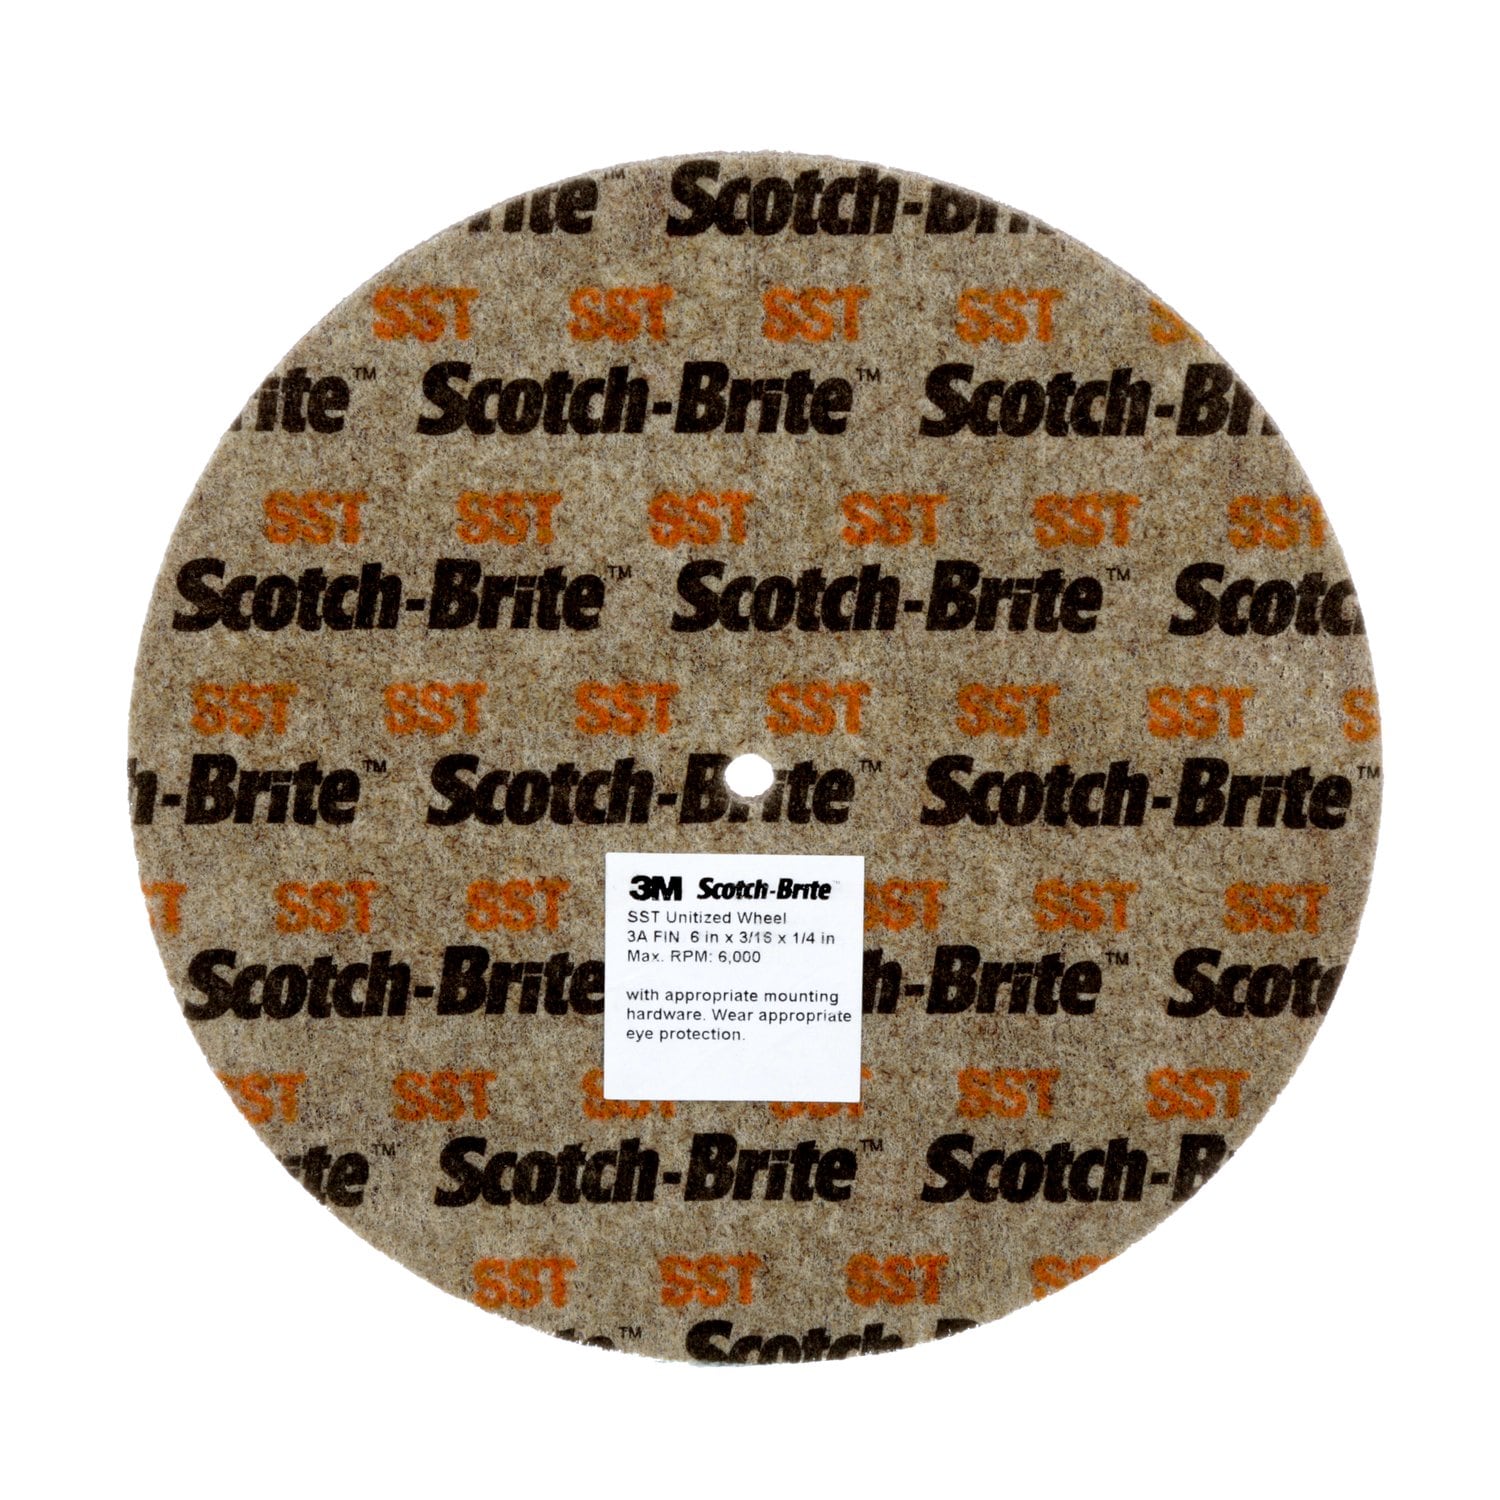 7010366004 - Scotch-Brite SST Unitized Wheel, 8 in x 1/4 in x 1 1/4 in 7A FIN, 8
ea/Case